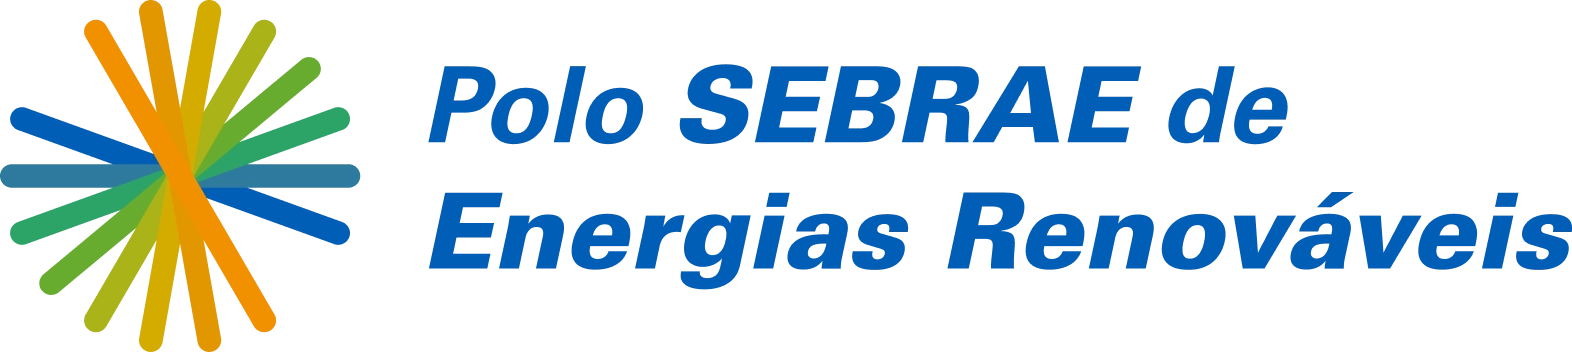 logo SEBRAE Energias Renováveis